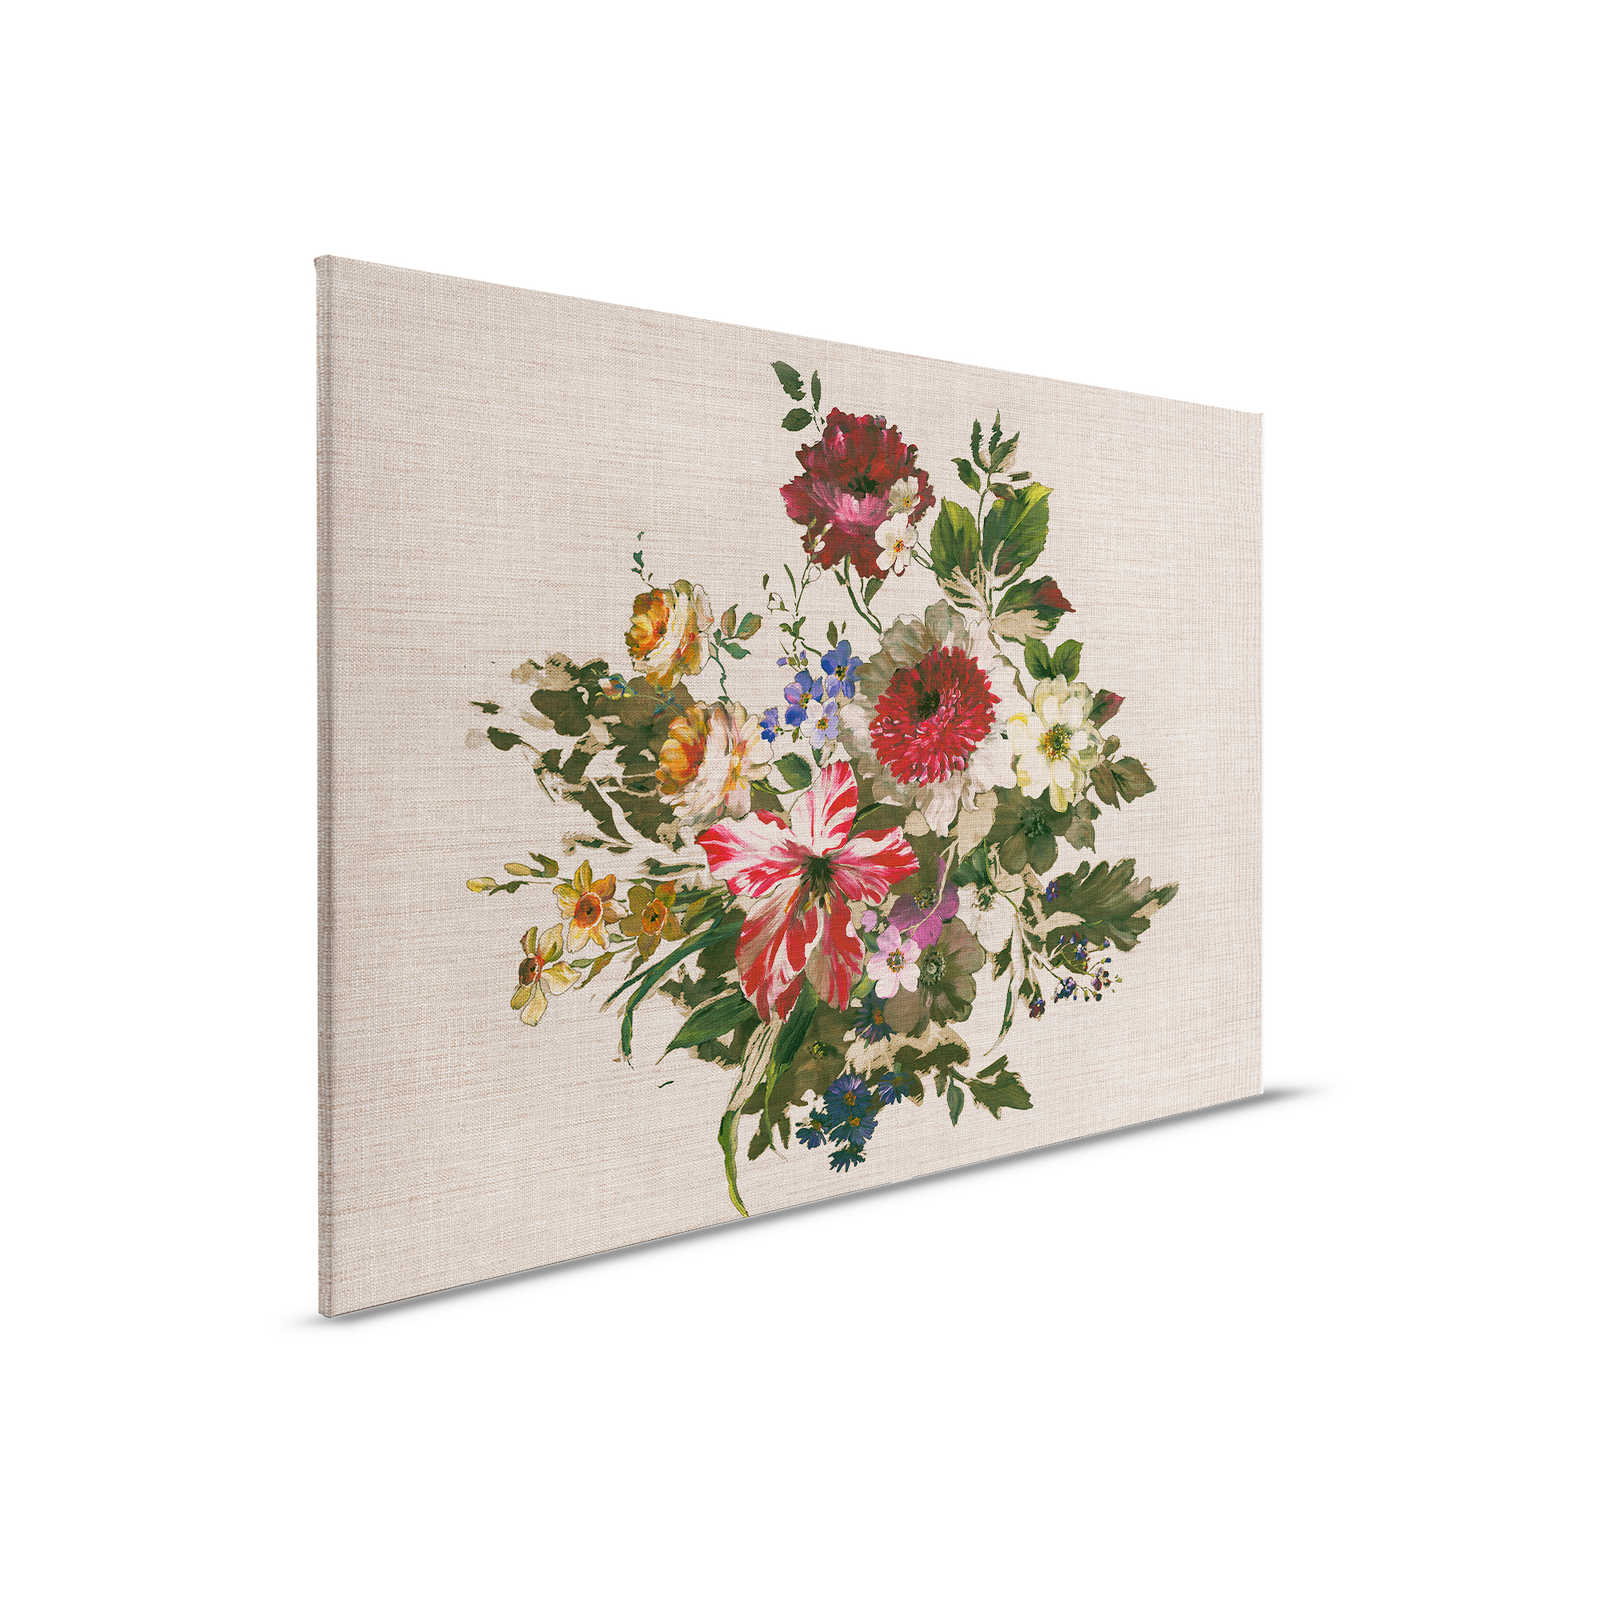 Tela dipinta con fiori in stile vintage e aspetto lino - 0,90 m x 0,60 m
